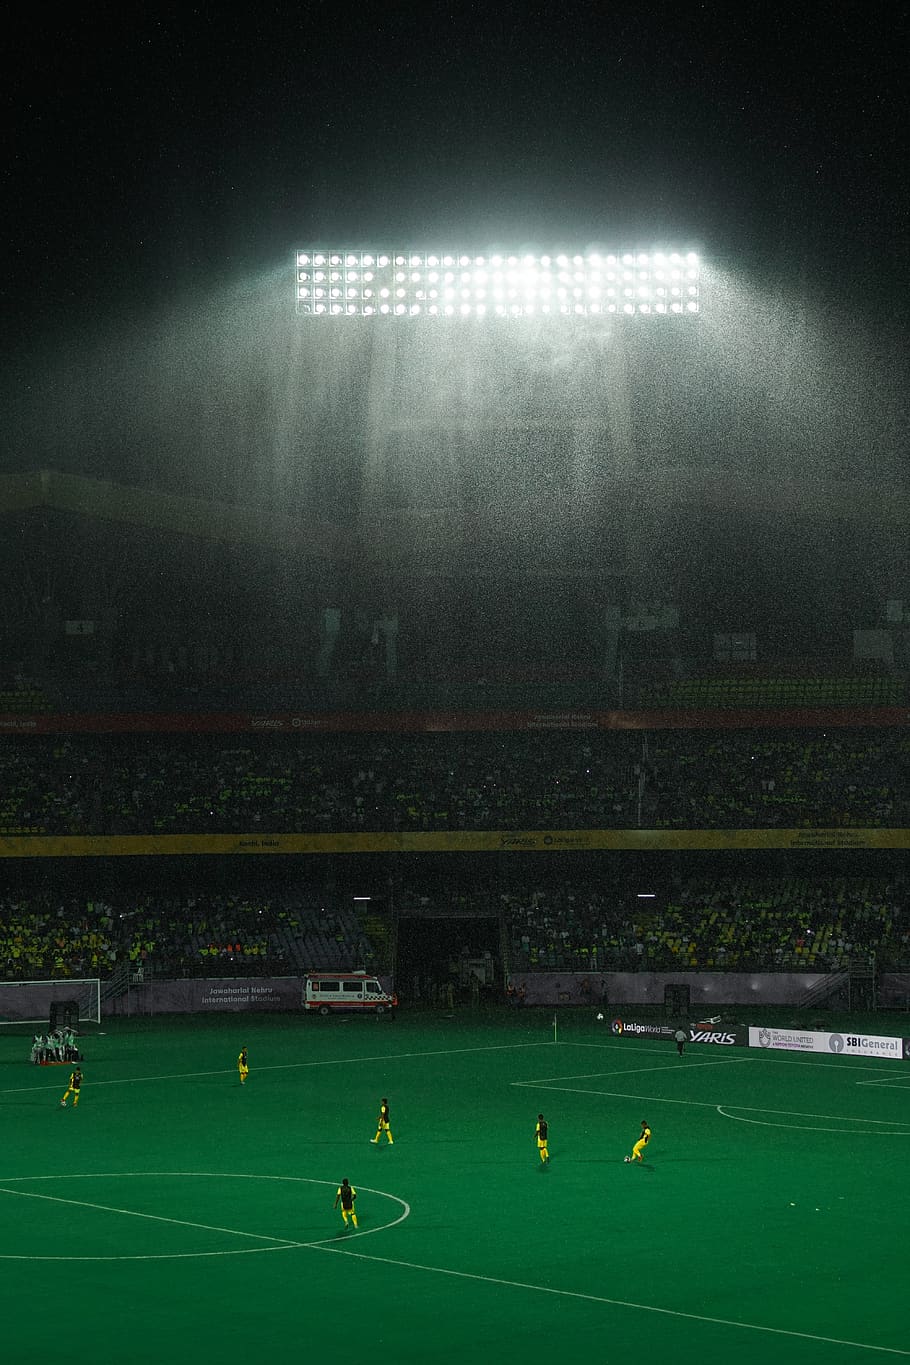 futebol, chuva, estádio, esporte, grupo de pessoas, multidão, esporte de equipe, pessoas reais, campo de futebol, iluminado